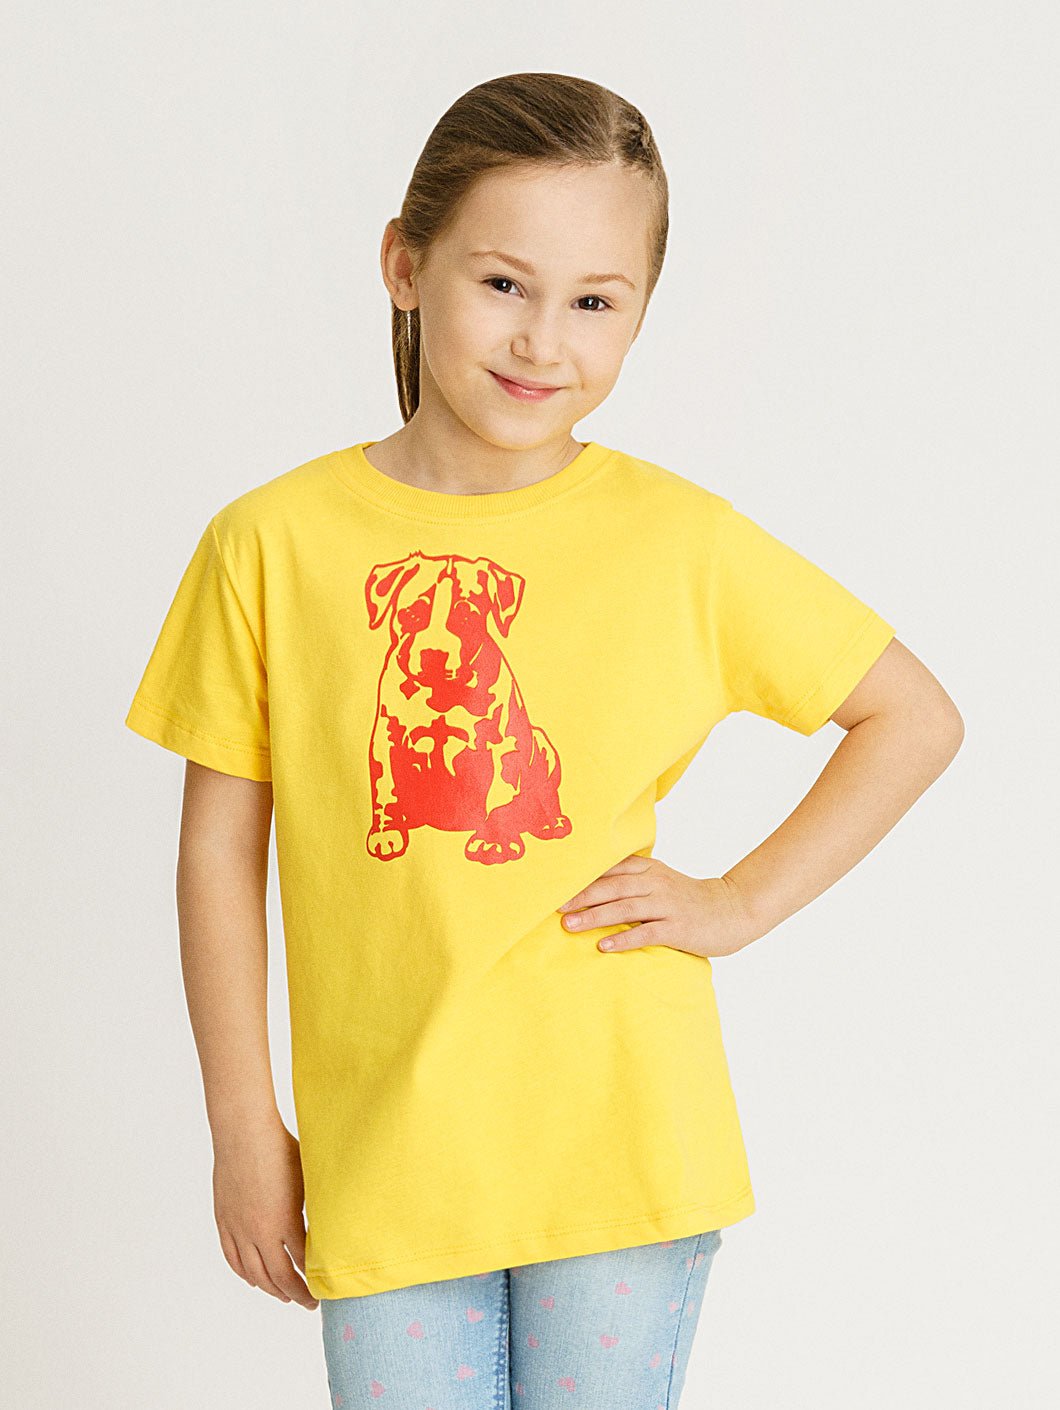 Babystaff Kids Logo T-Shirt gelb - 12